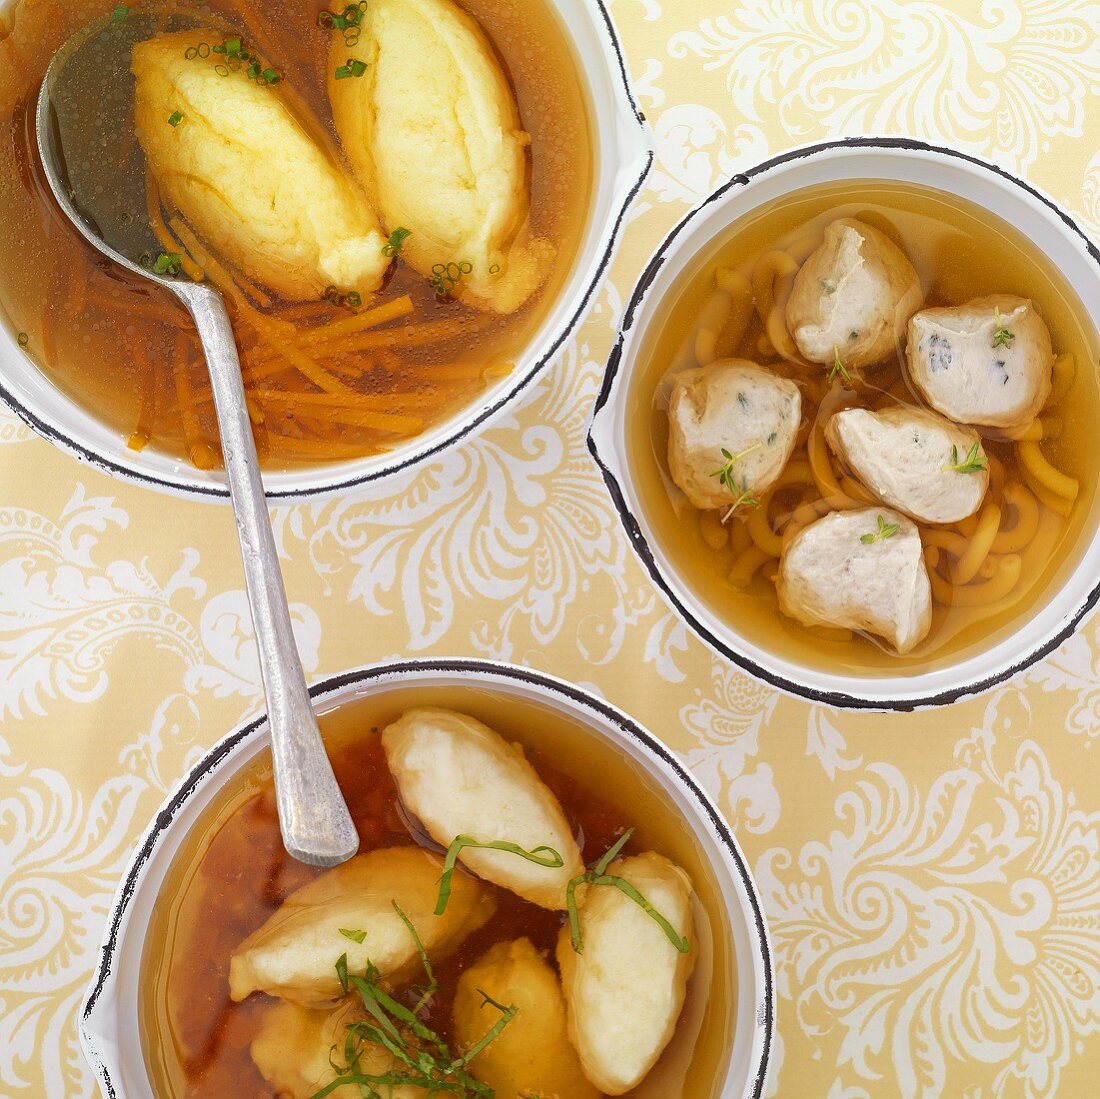 Broth with semolina dumplings, meat dumplings and ricotta dumplings